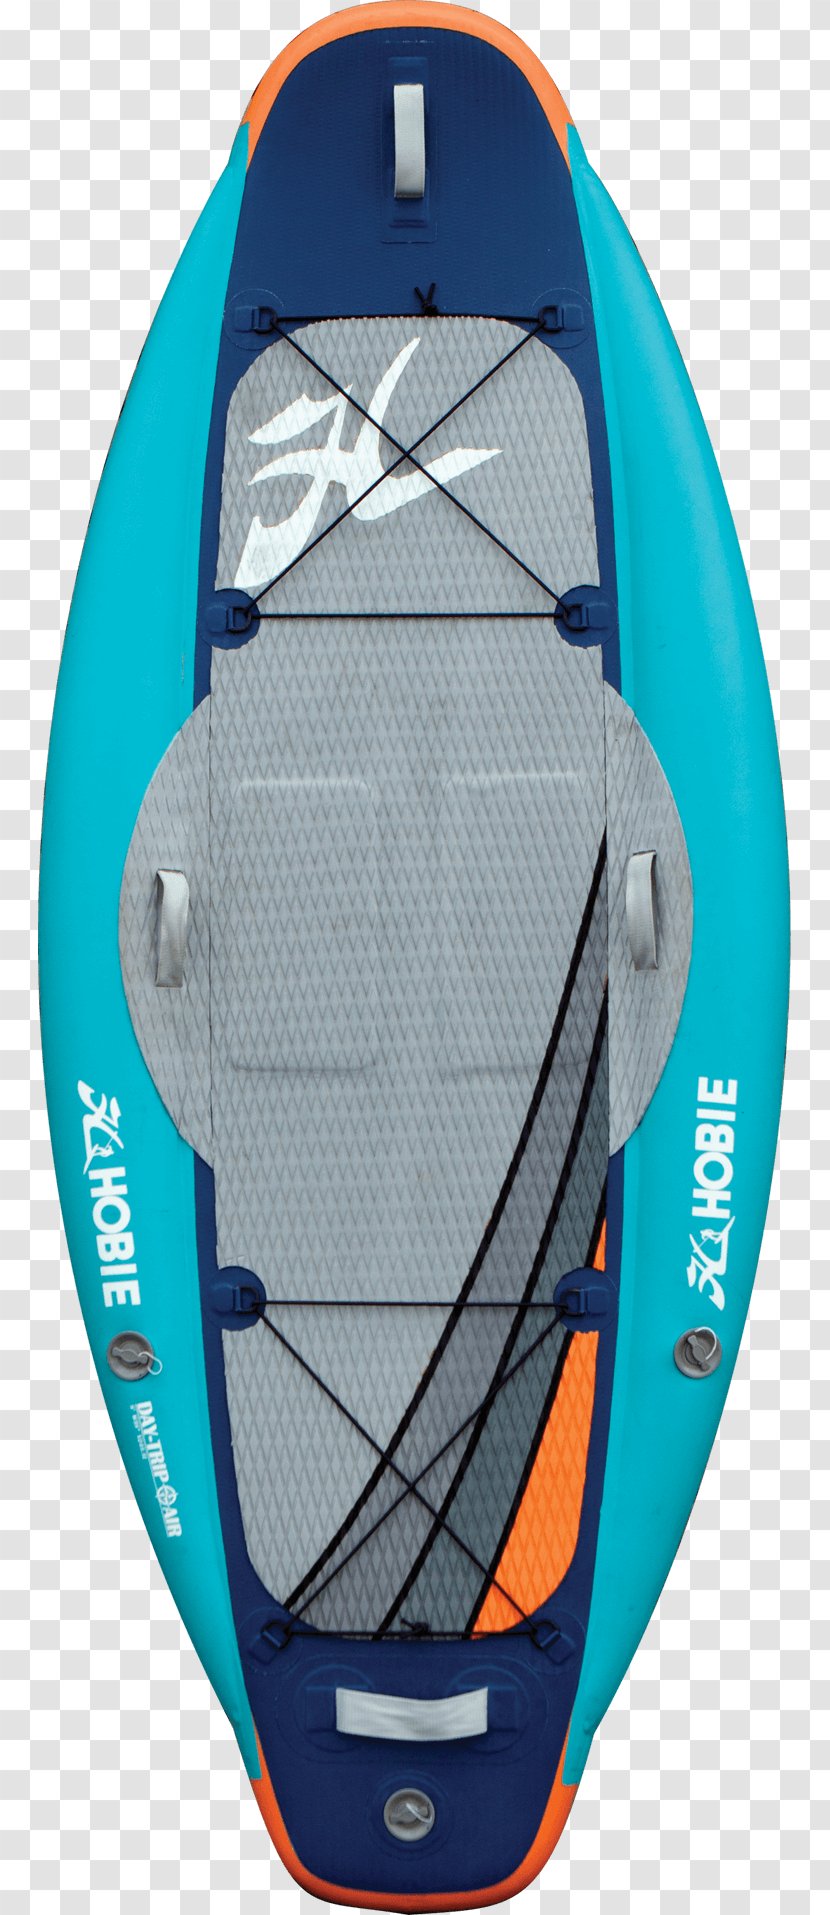 Surfboard Standup Paddleboarding Outboard Motor Kayak Boat - Carbon Fiber Reinforced Polymer Transparent PNG